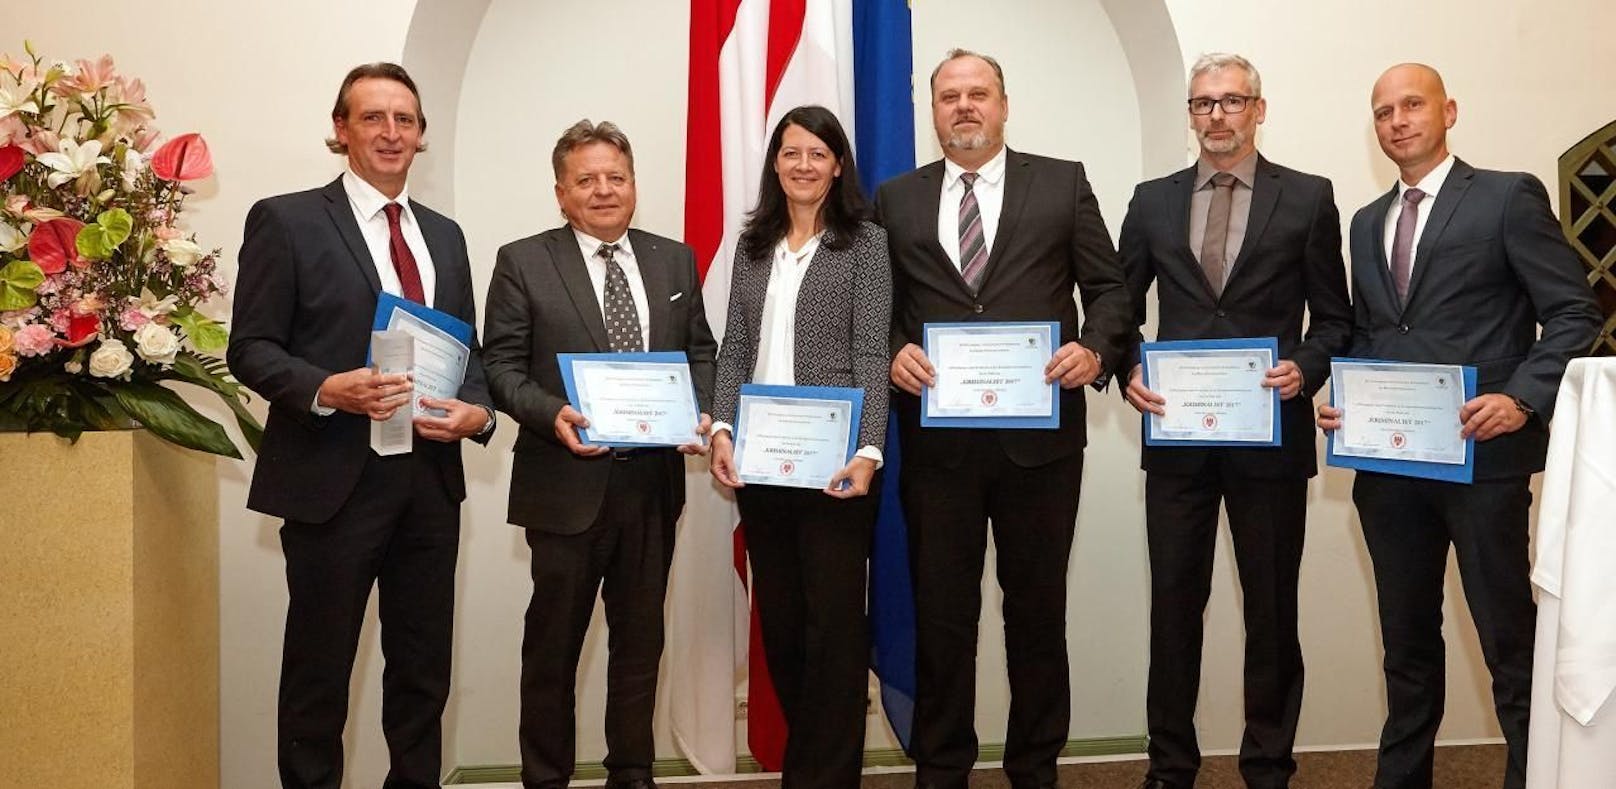 Die Top-Kriminalisten mit ihren Auszeichnungen (credit: Ferdinand Germadnik)